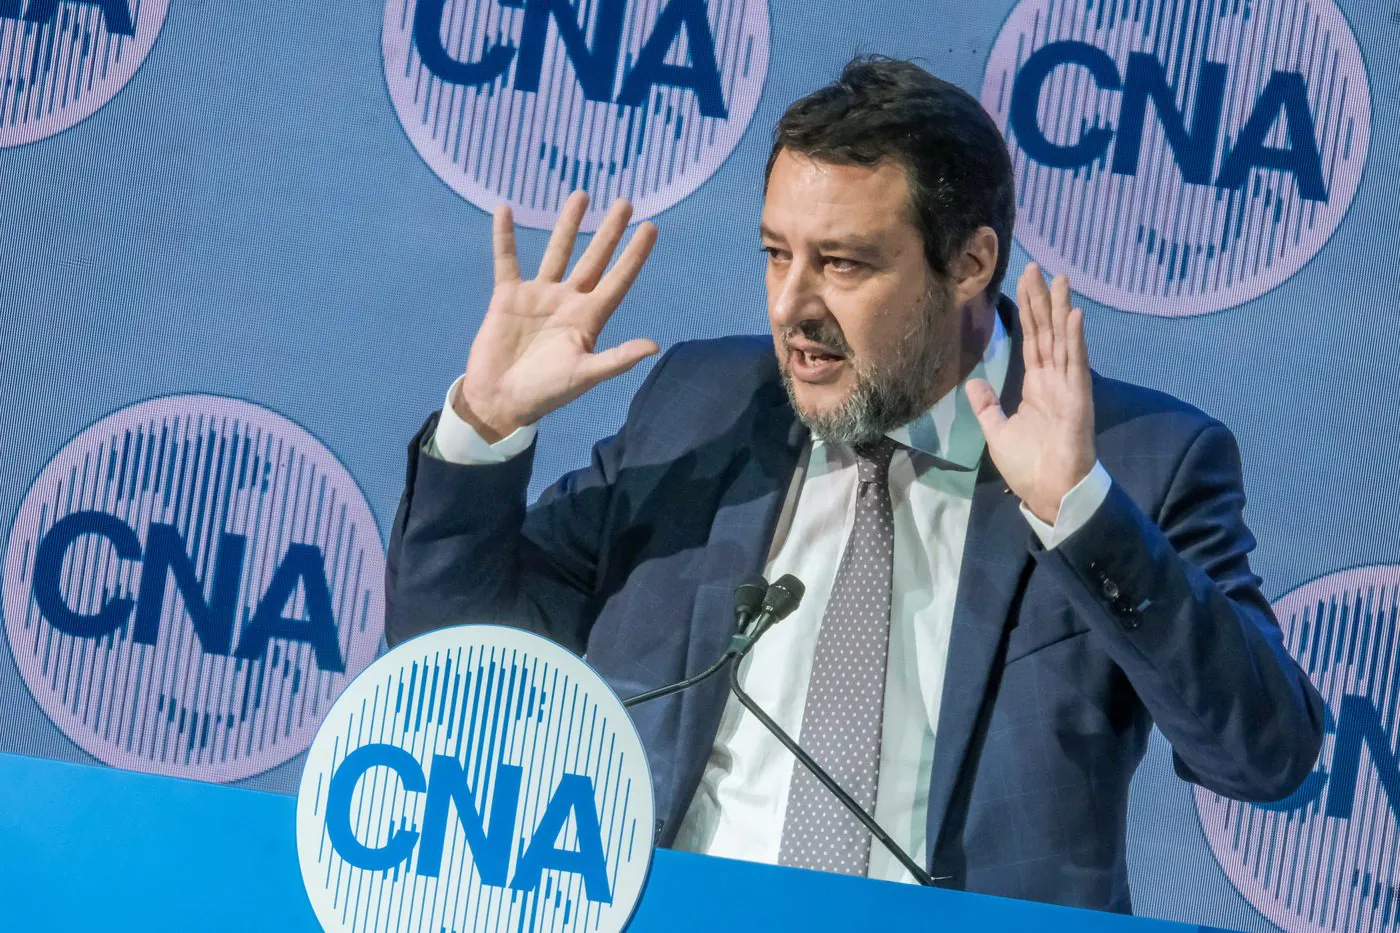 Sciopero, Salvini: "Fascista, squadrista, spregevole: ma io ho rispettato la legge"